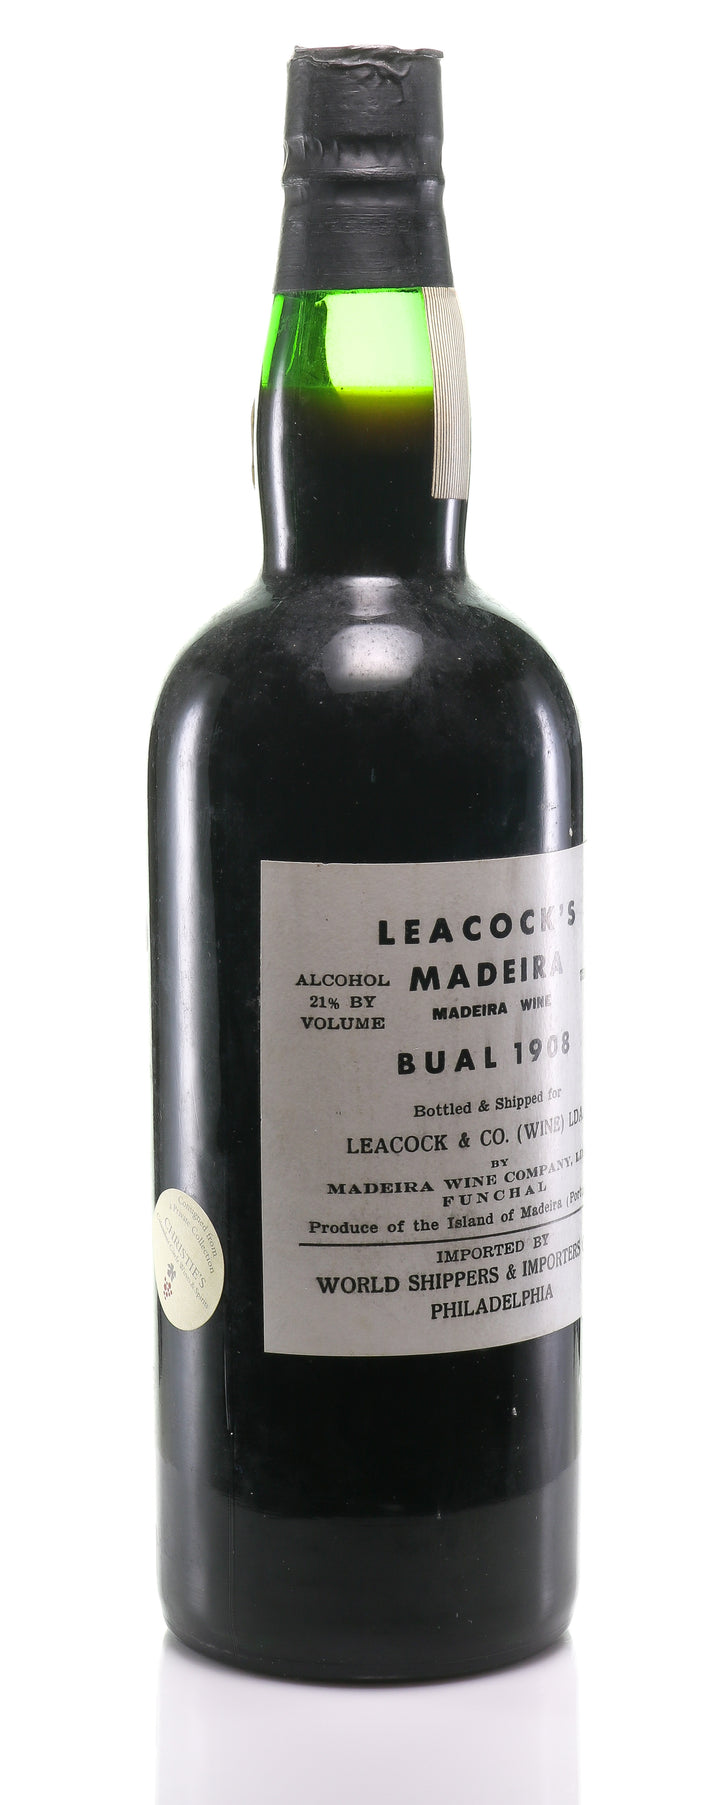 Madeira Leacock's, AO-SM Bual 1908 - legendaryvintages